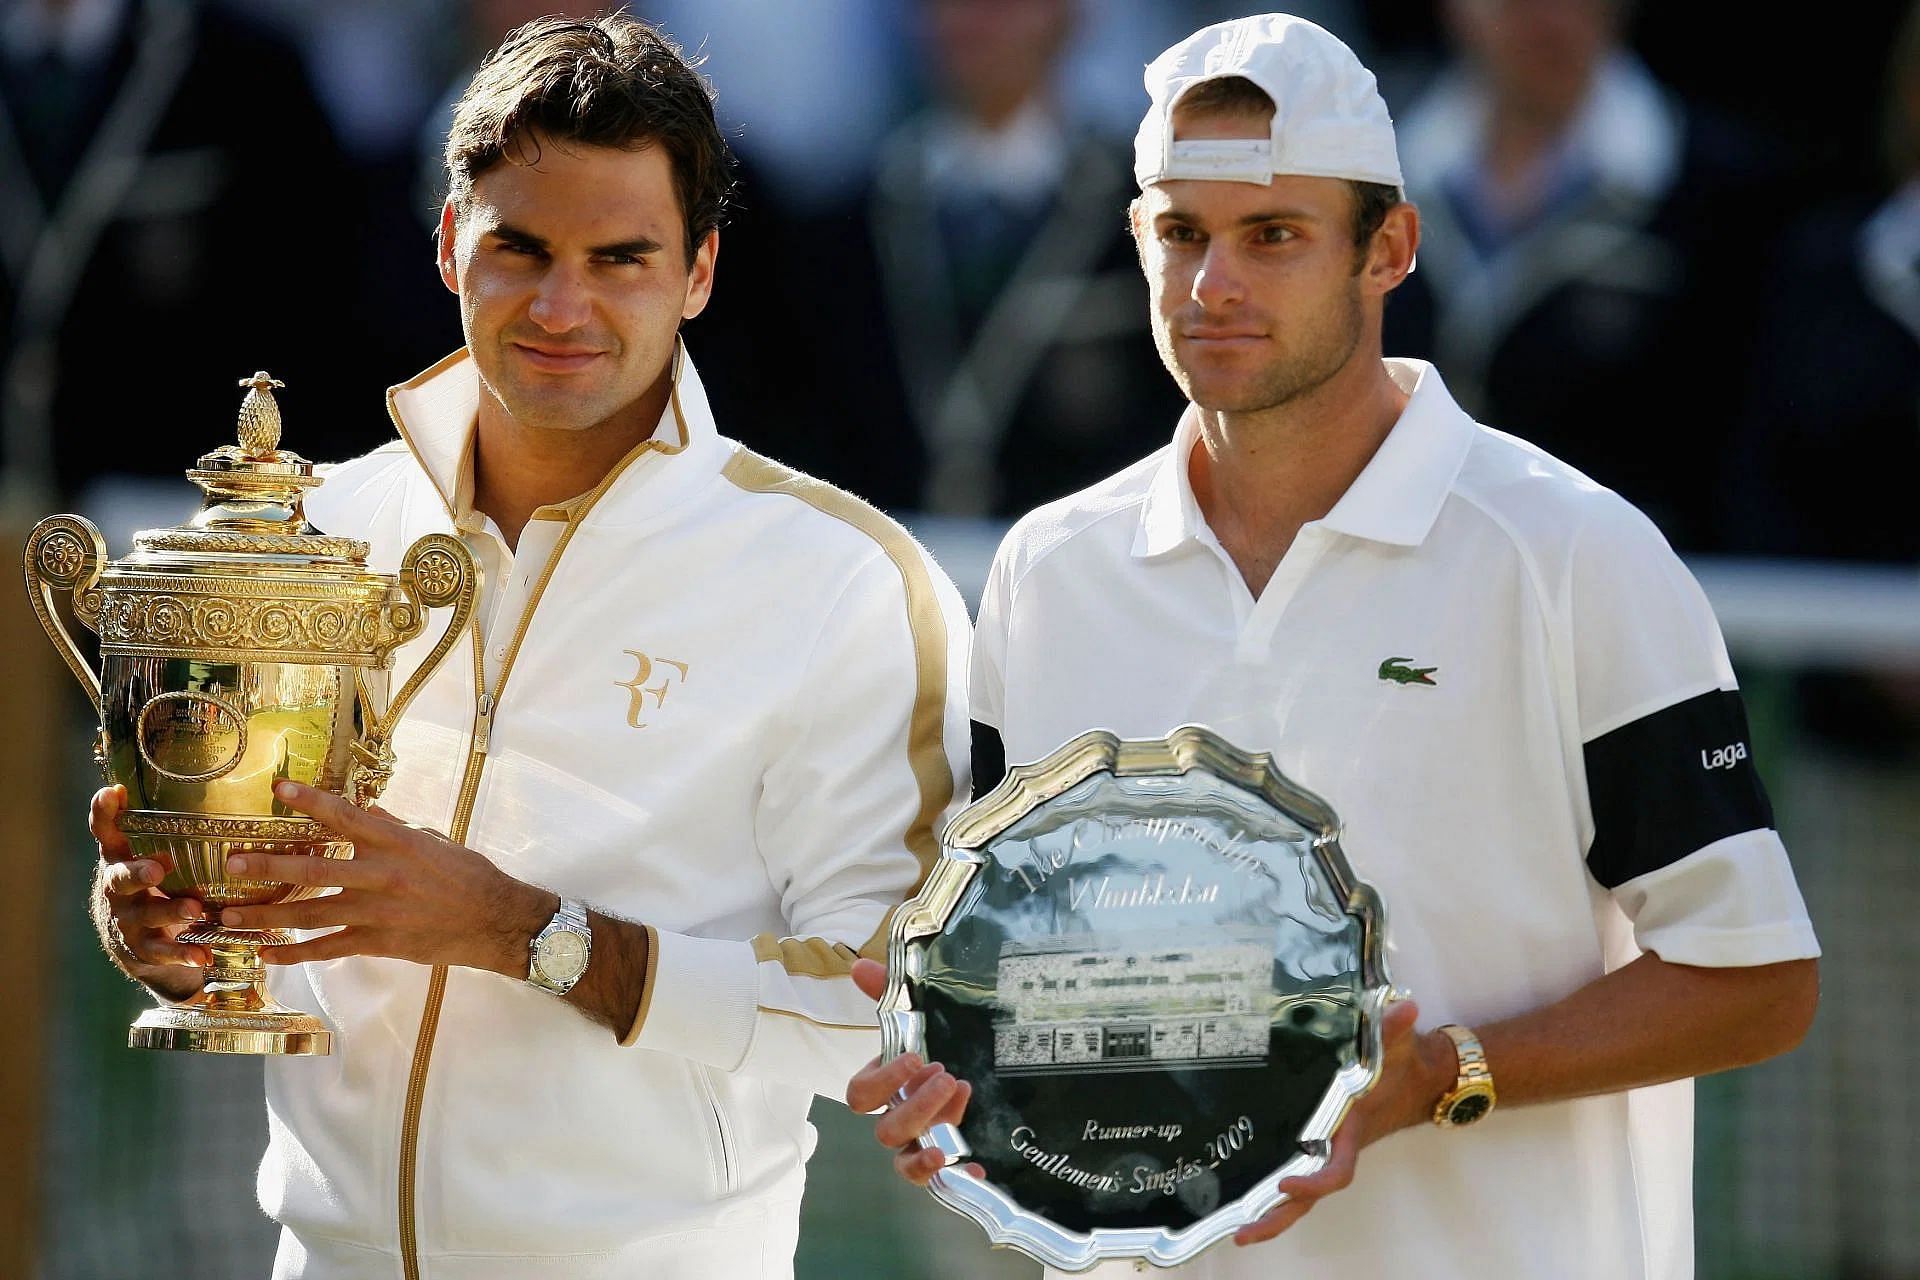 The Wimbledon Championships: 2009